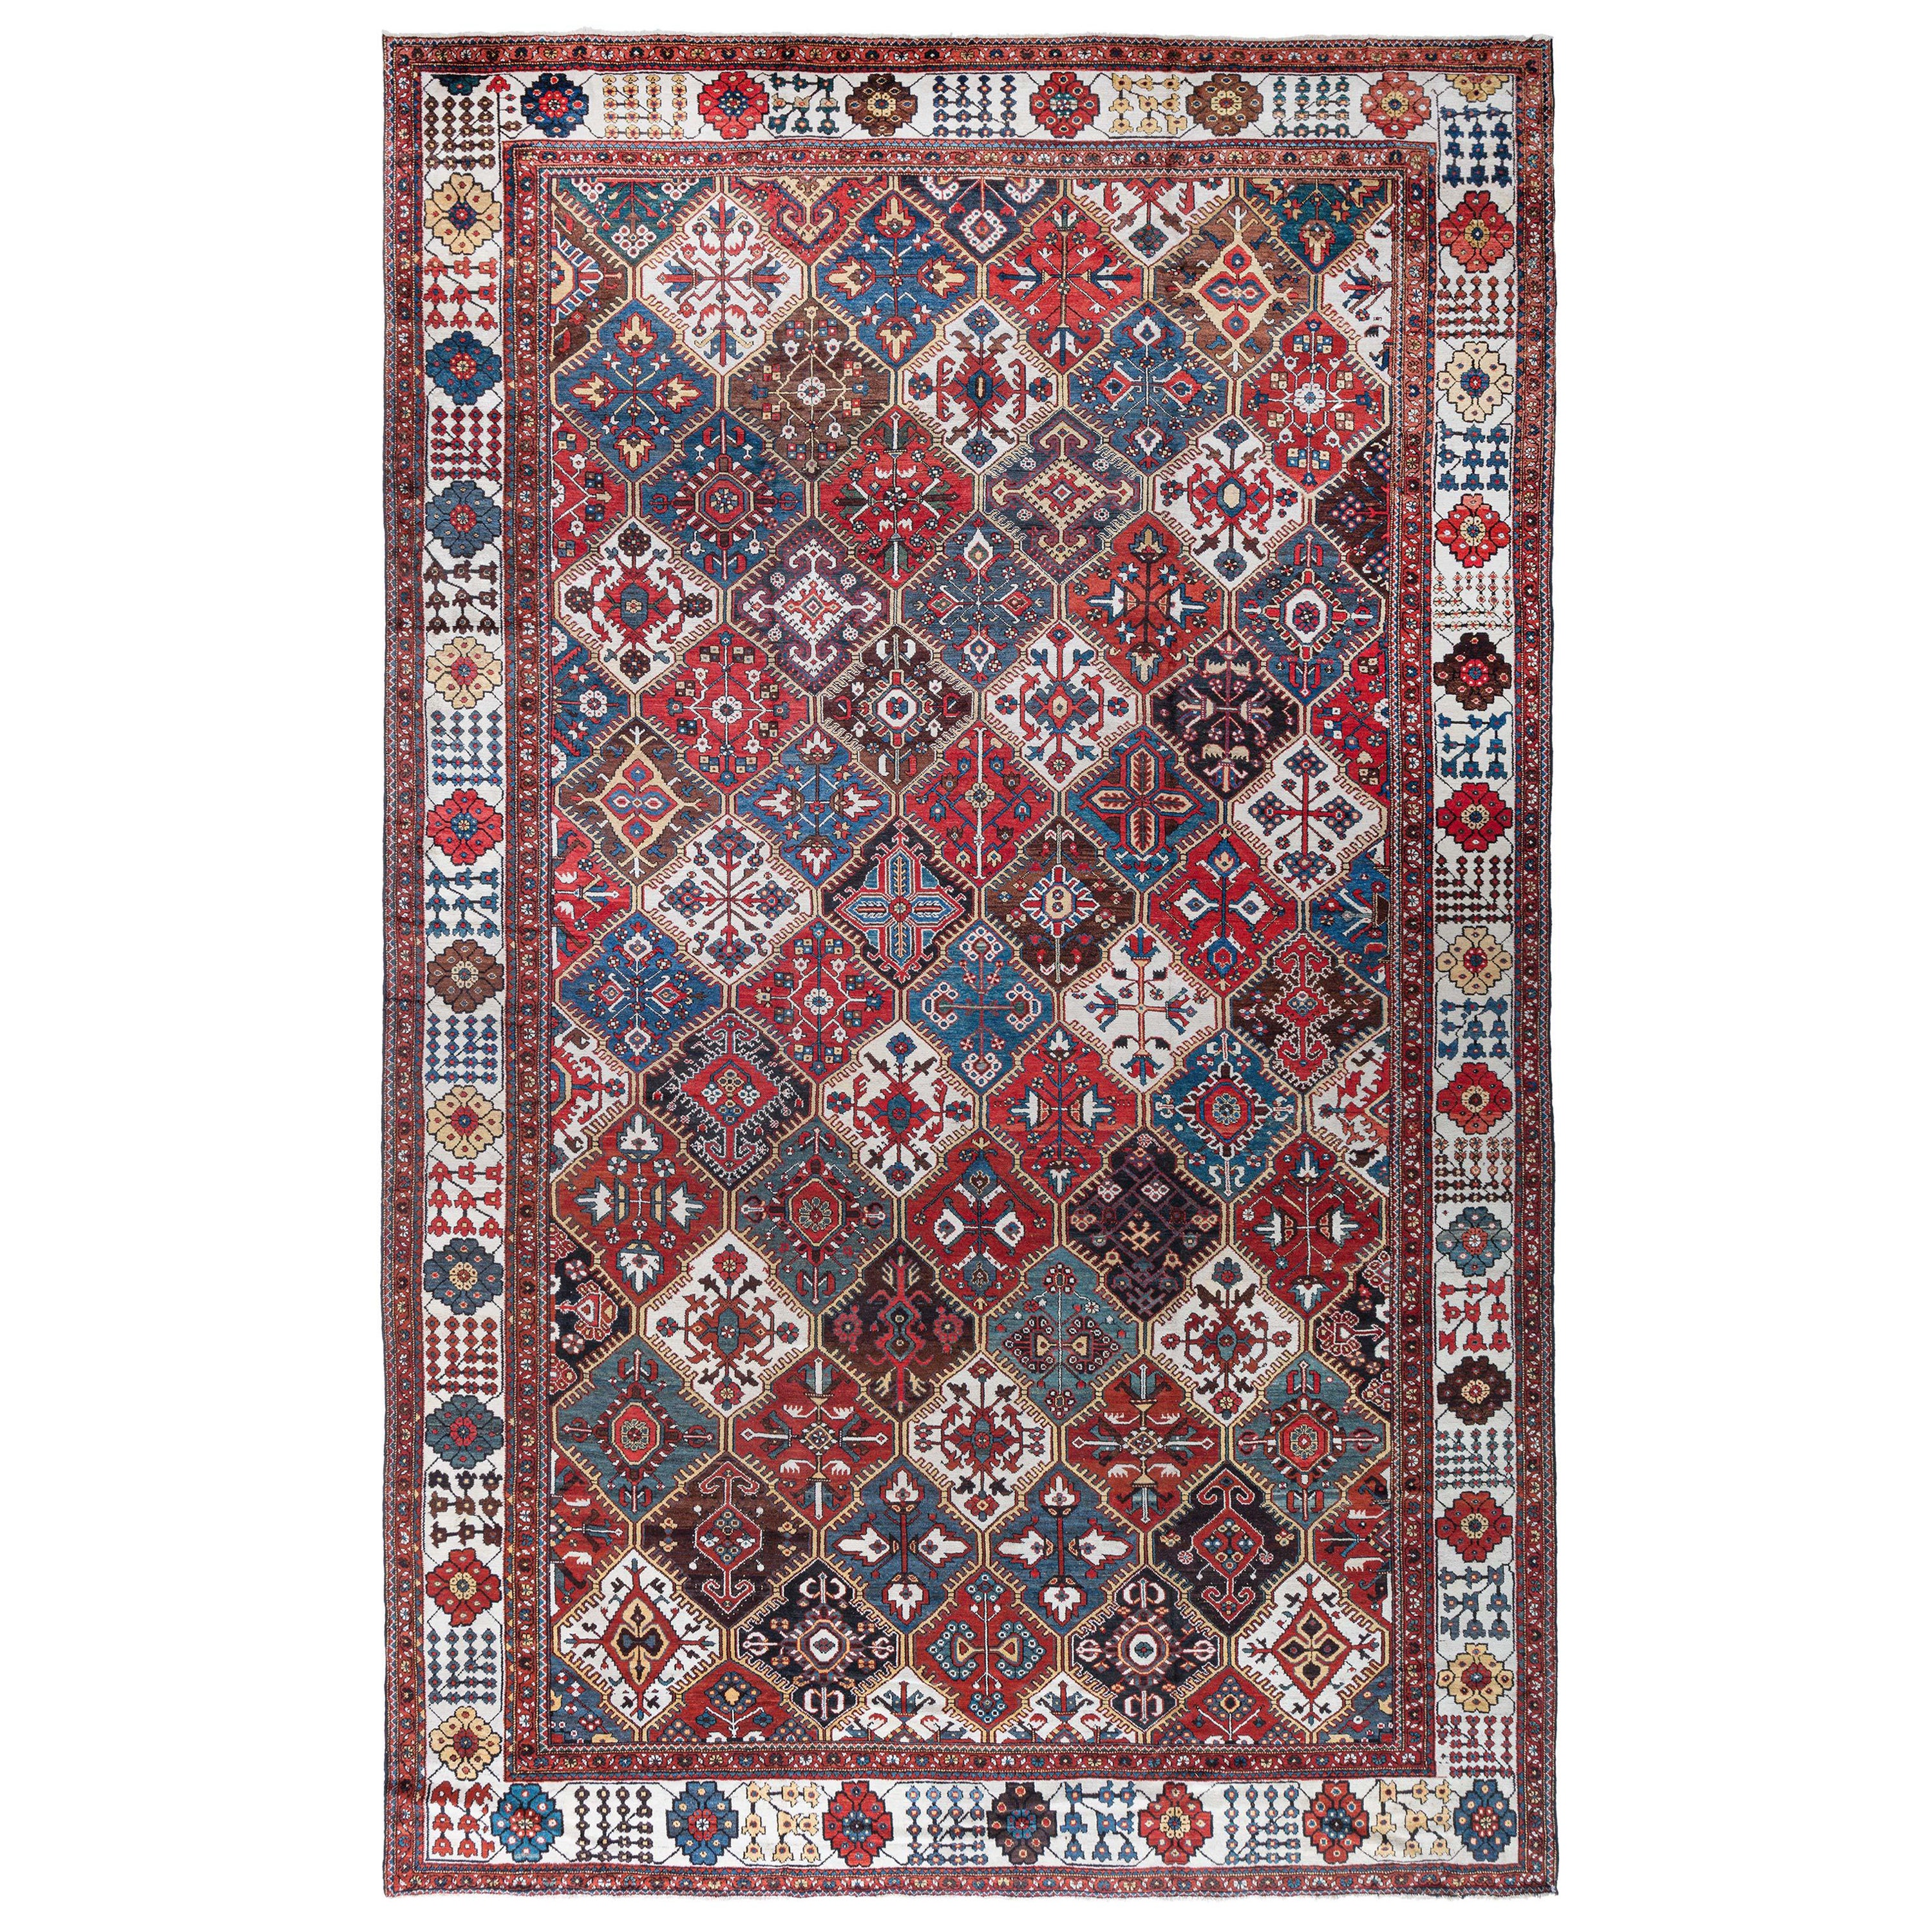 Authentic 19th Century Persian Bakhtiari Carpet For Sale